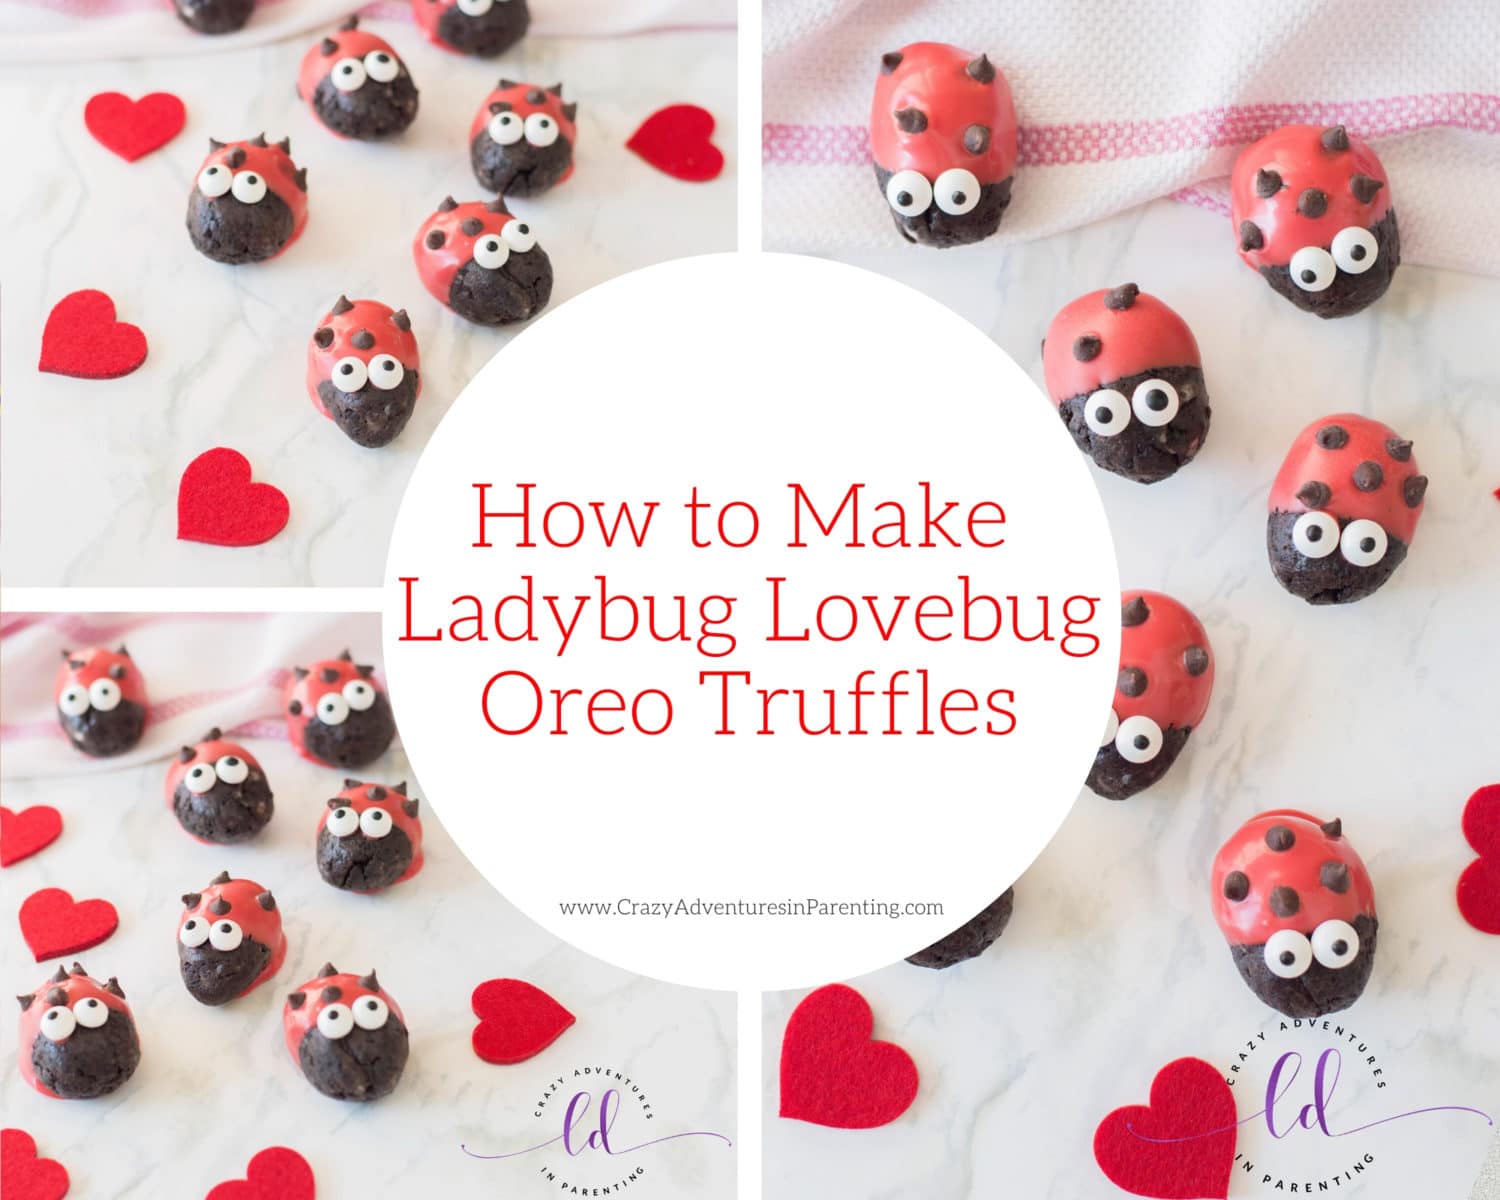 How to Make Ladybug Lovebug Oreo Truffles